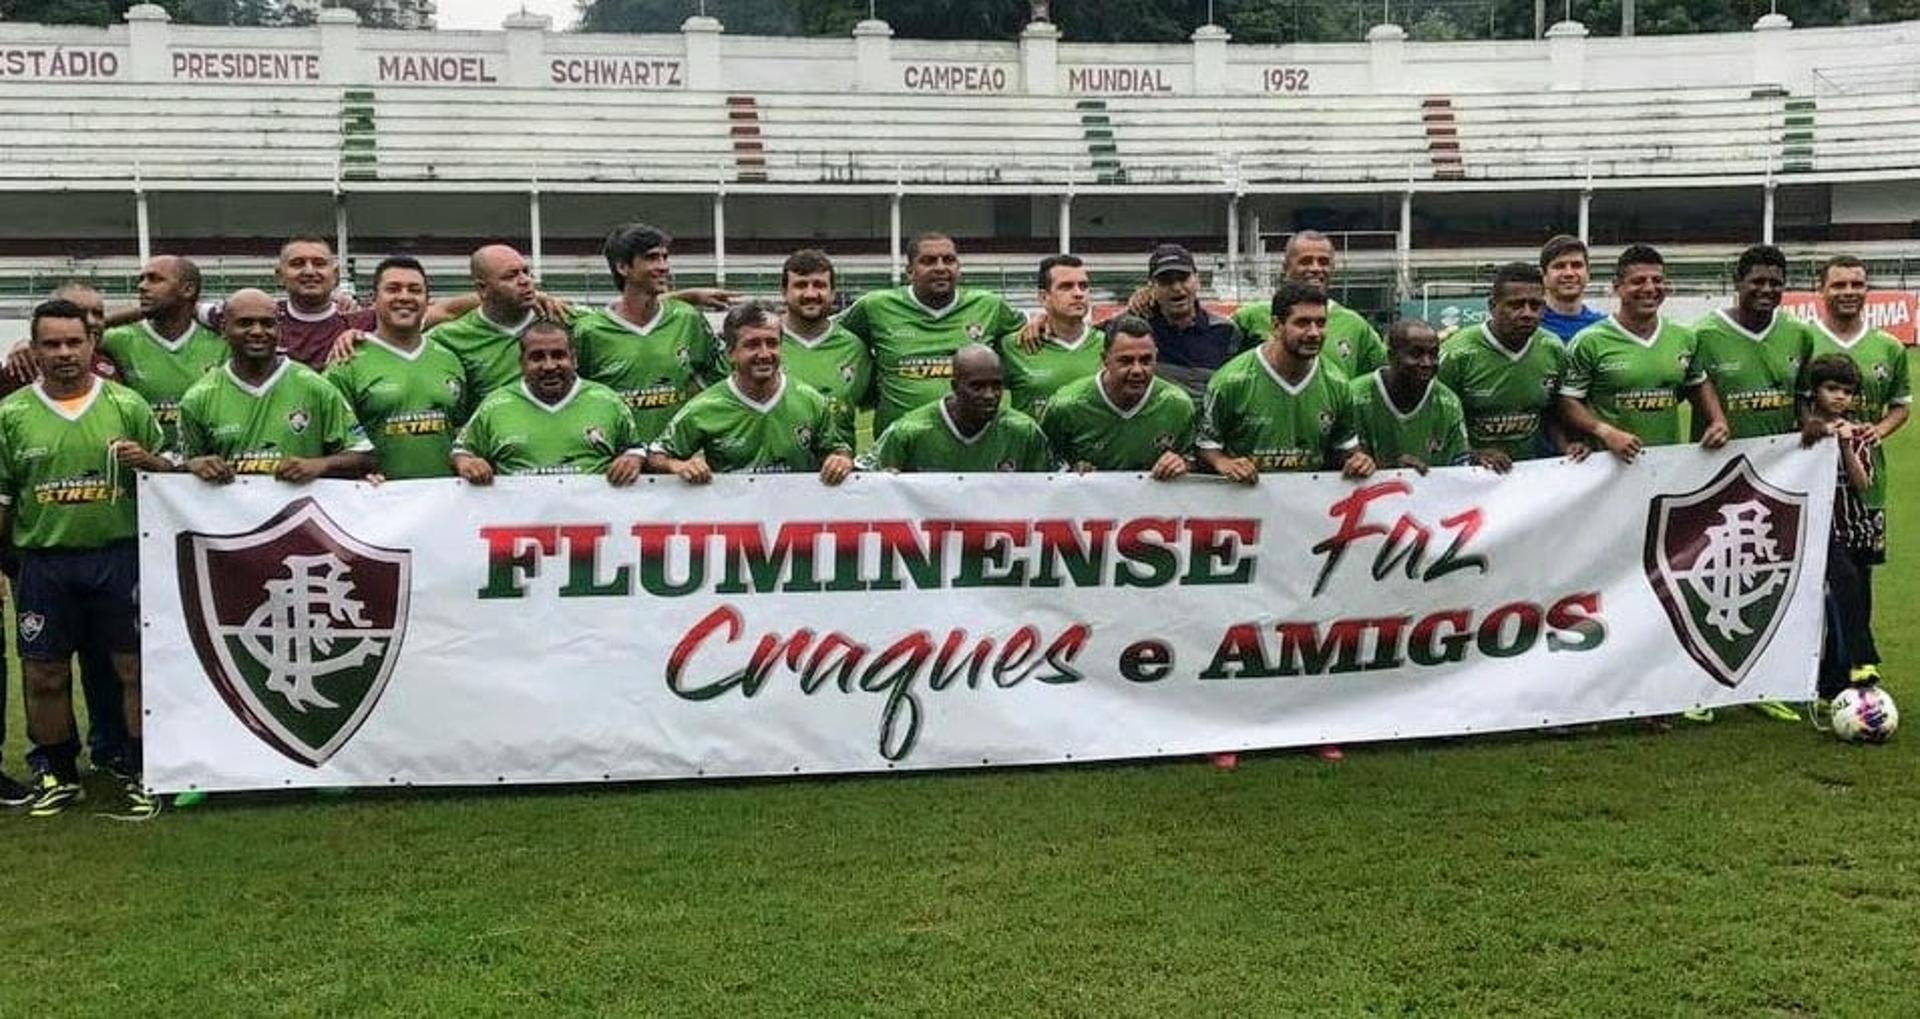 Fluminense master